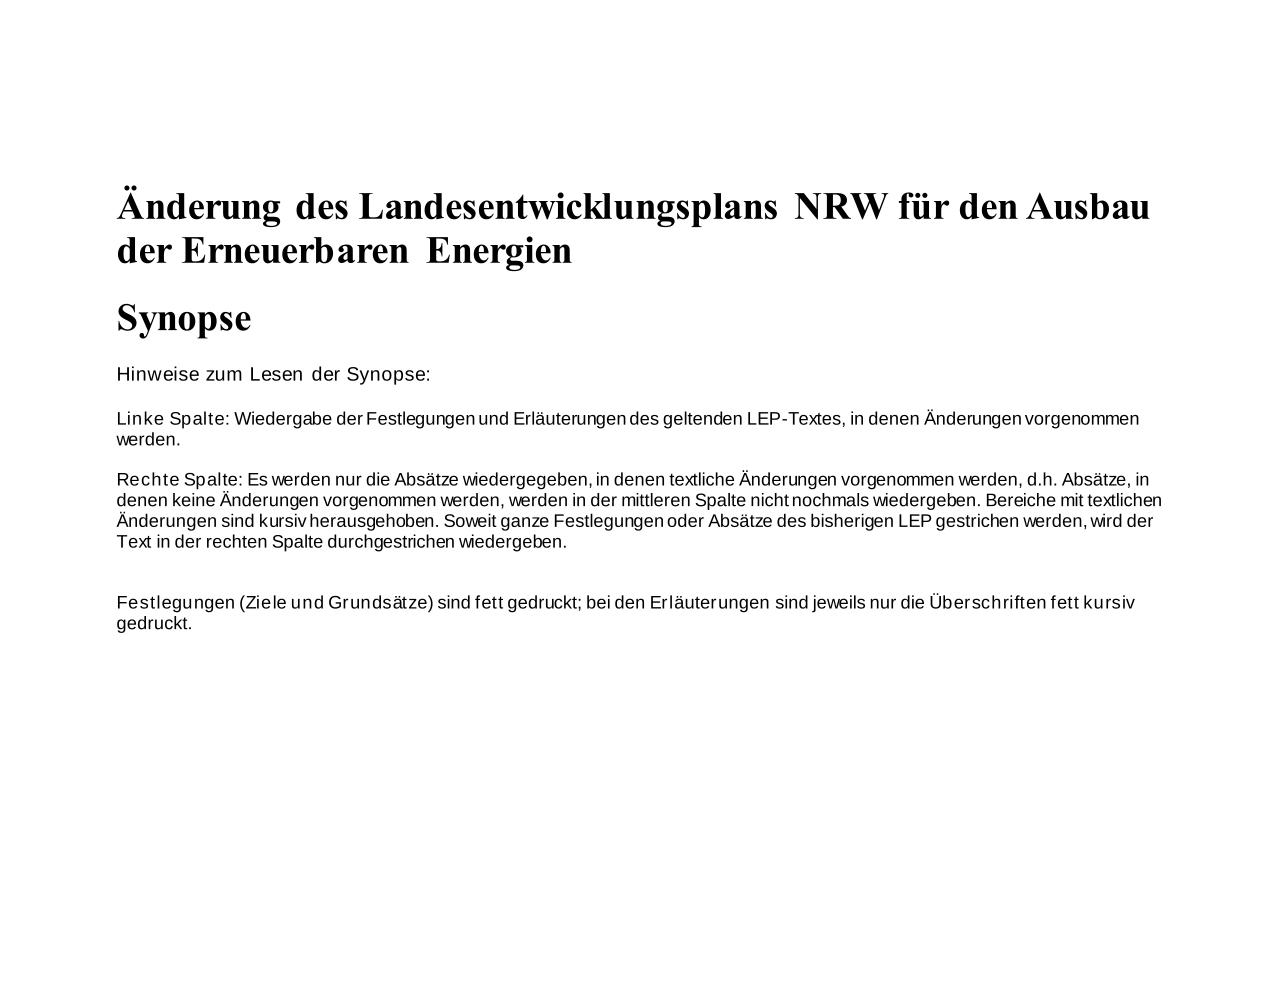 Vorschau Dokument: Synopse des Landesentwicklungsplans - download Dokument